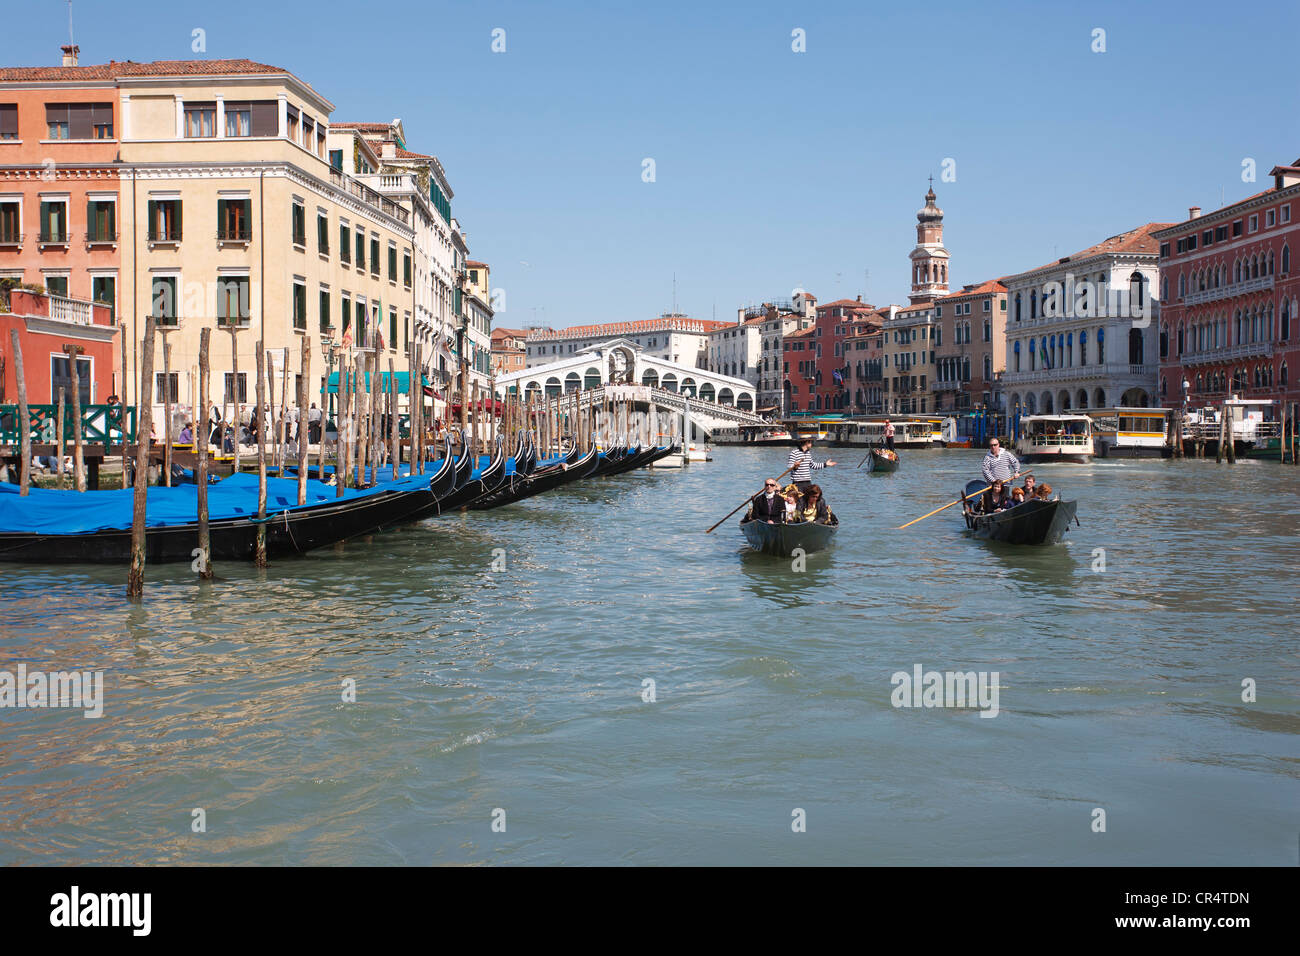 Canal Grande, angedockt Canal Grande mit der Rialtobrücke, Gondolieri in venezianischen Gondeln vorbei Gondeln, Venedig, Italien Stockfoto